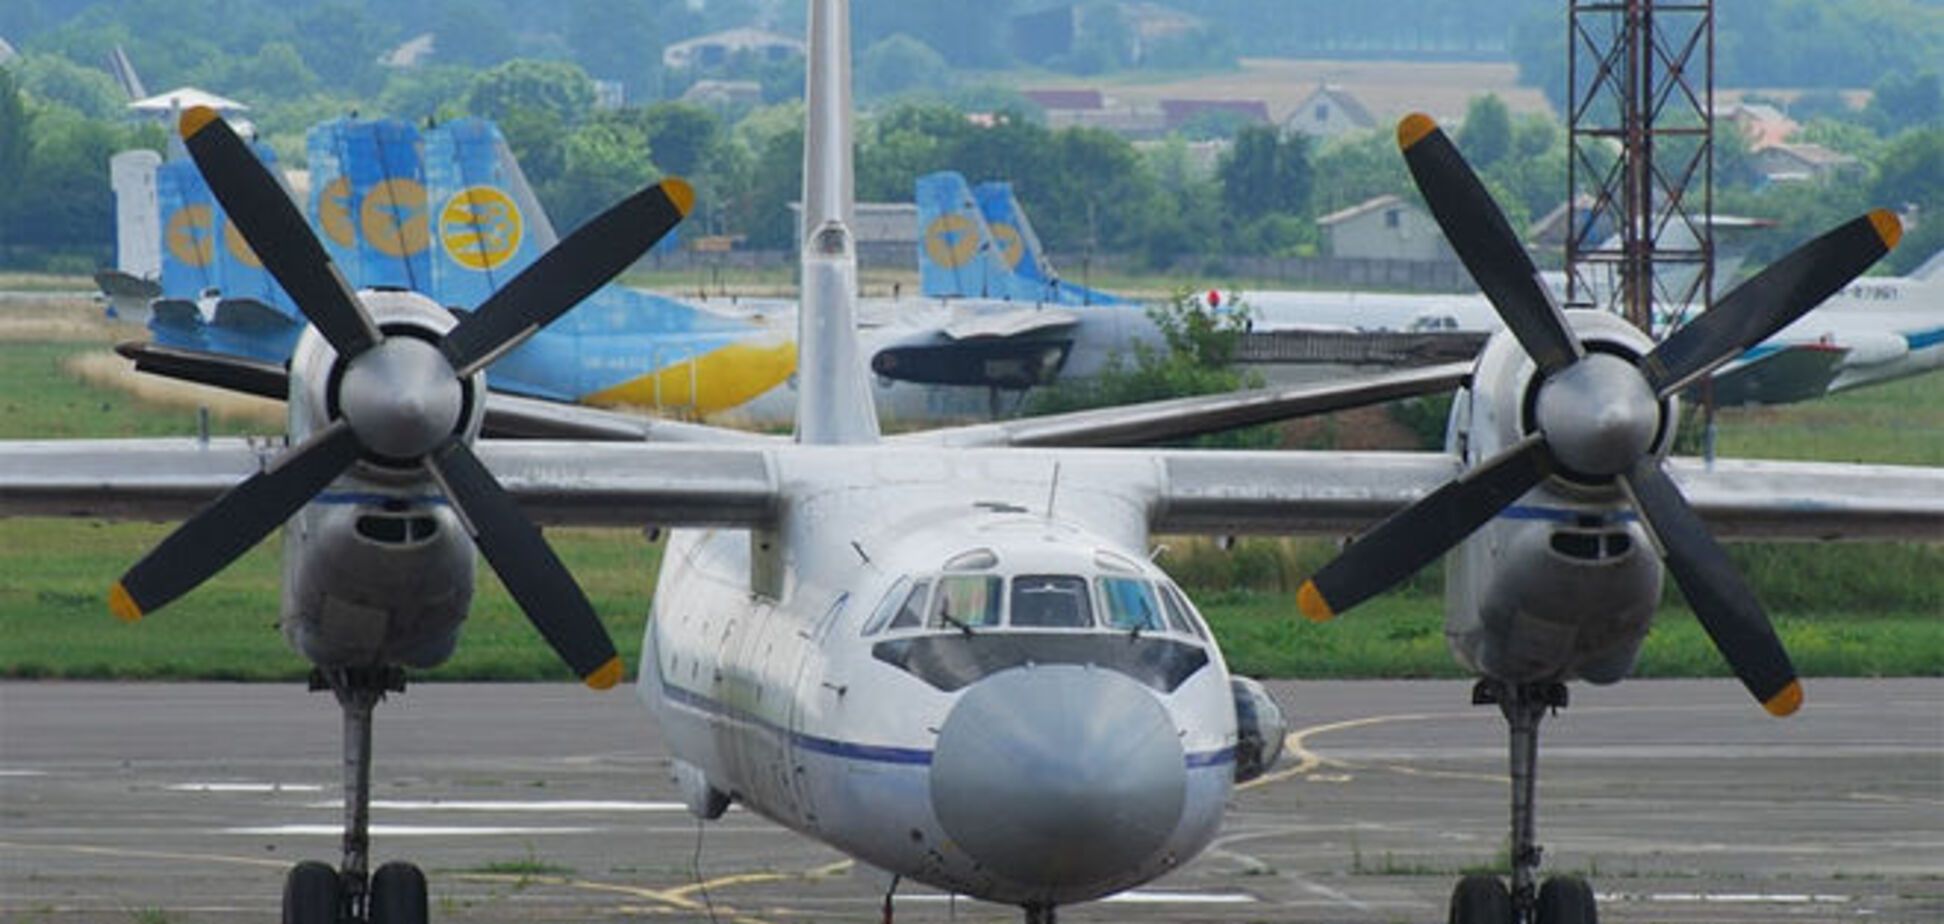 После ремонта в Украине исчезли пять индийских самолетов - СМИ